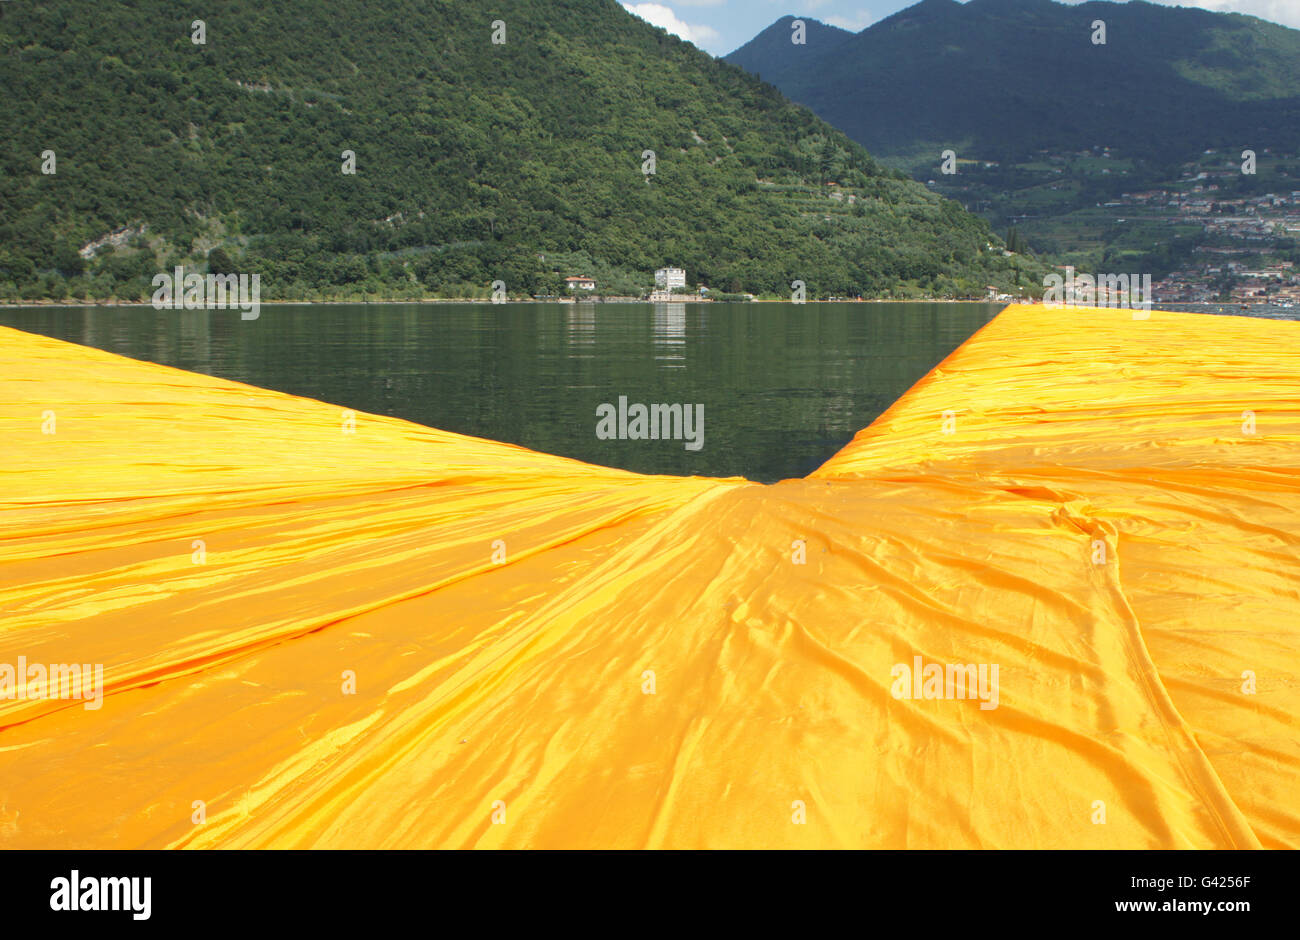 Sulzano, Italien. 17. Juni 2016. Menschen zu Fuß entlang der Orange  schwimmen Pfeiler des Projekts "The Floating Piers" von Christo am Iseosee  Lago in Sulzano, Italien, 17. Juni 2016. Das Kunstprojekt von